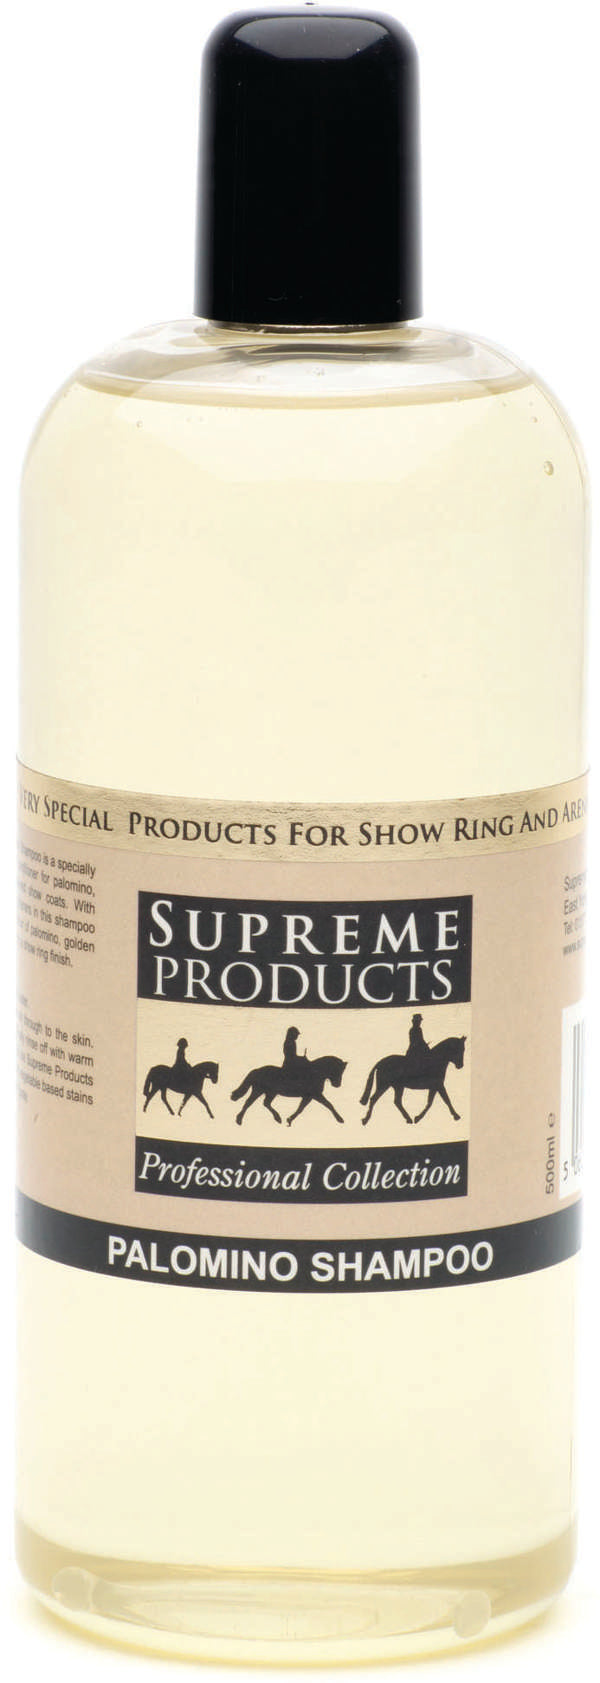 Supreme Products Palomino Shampoo